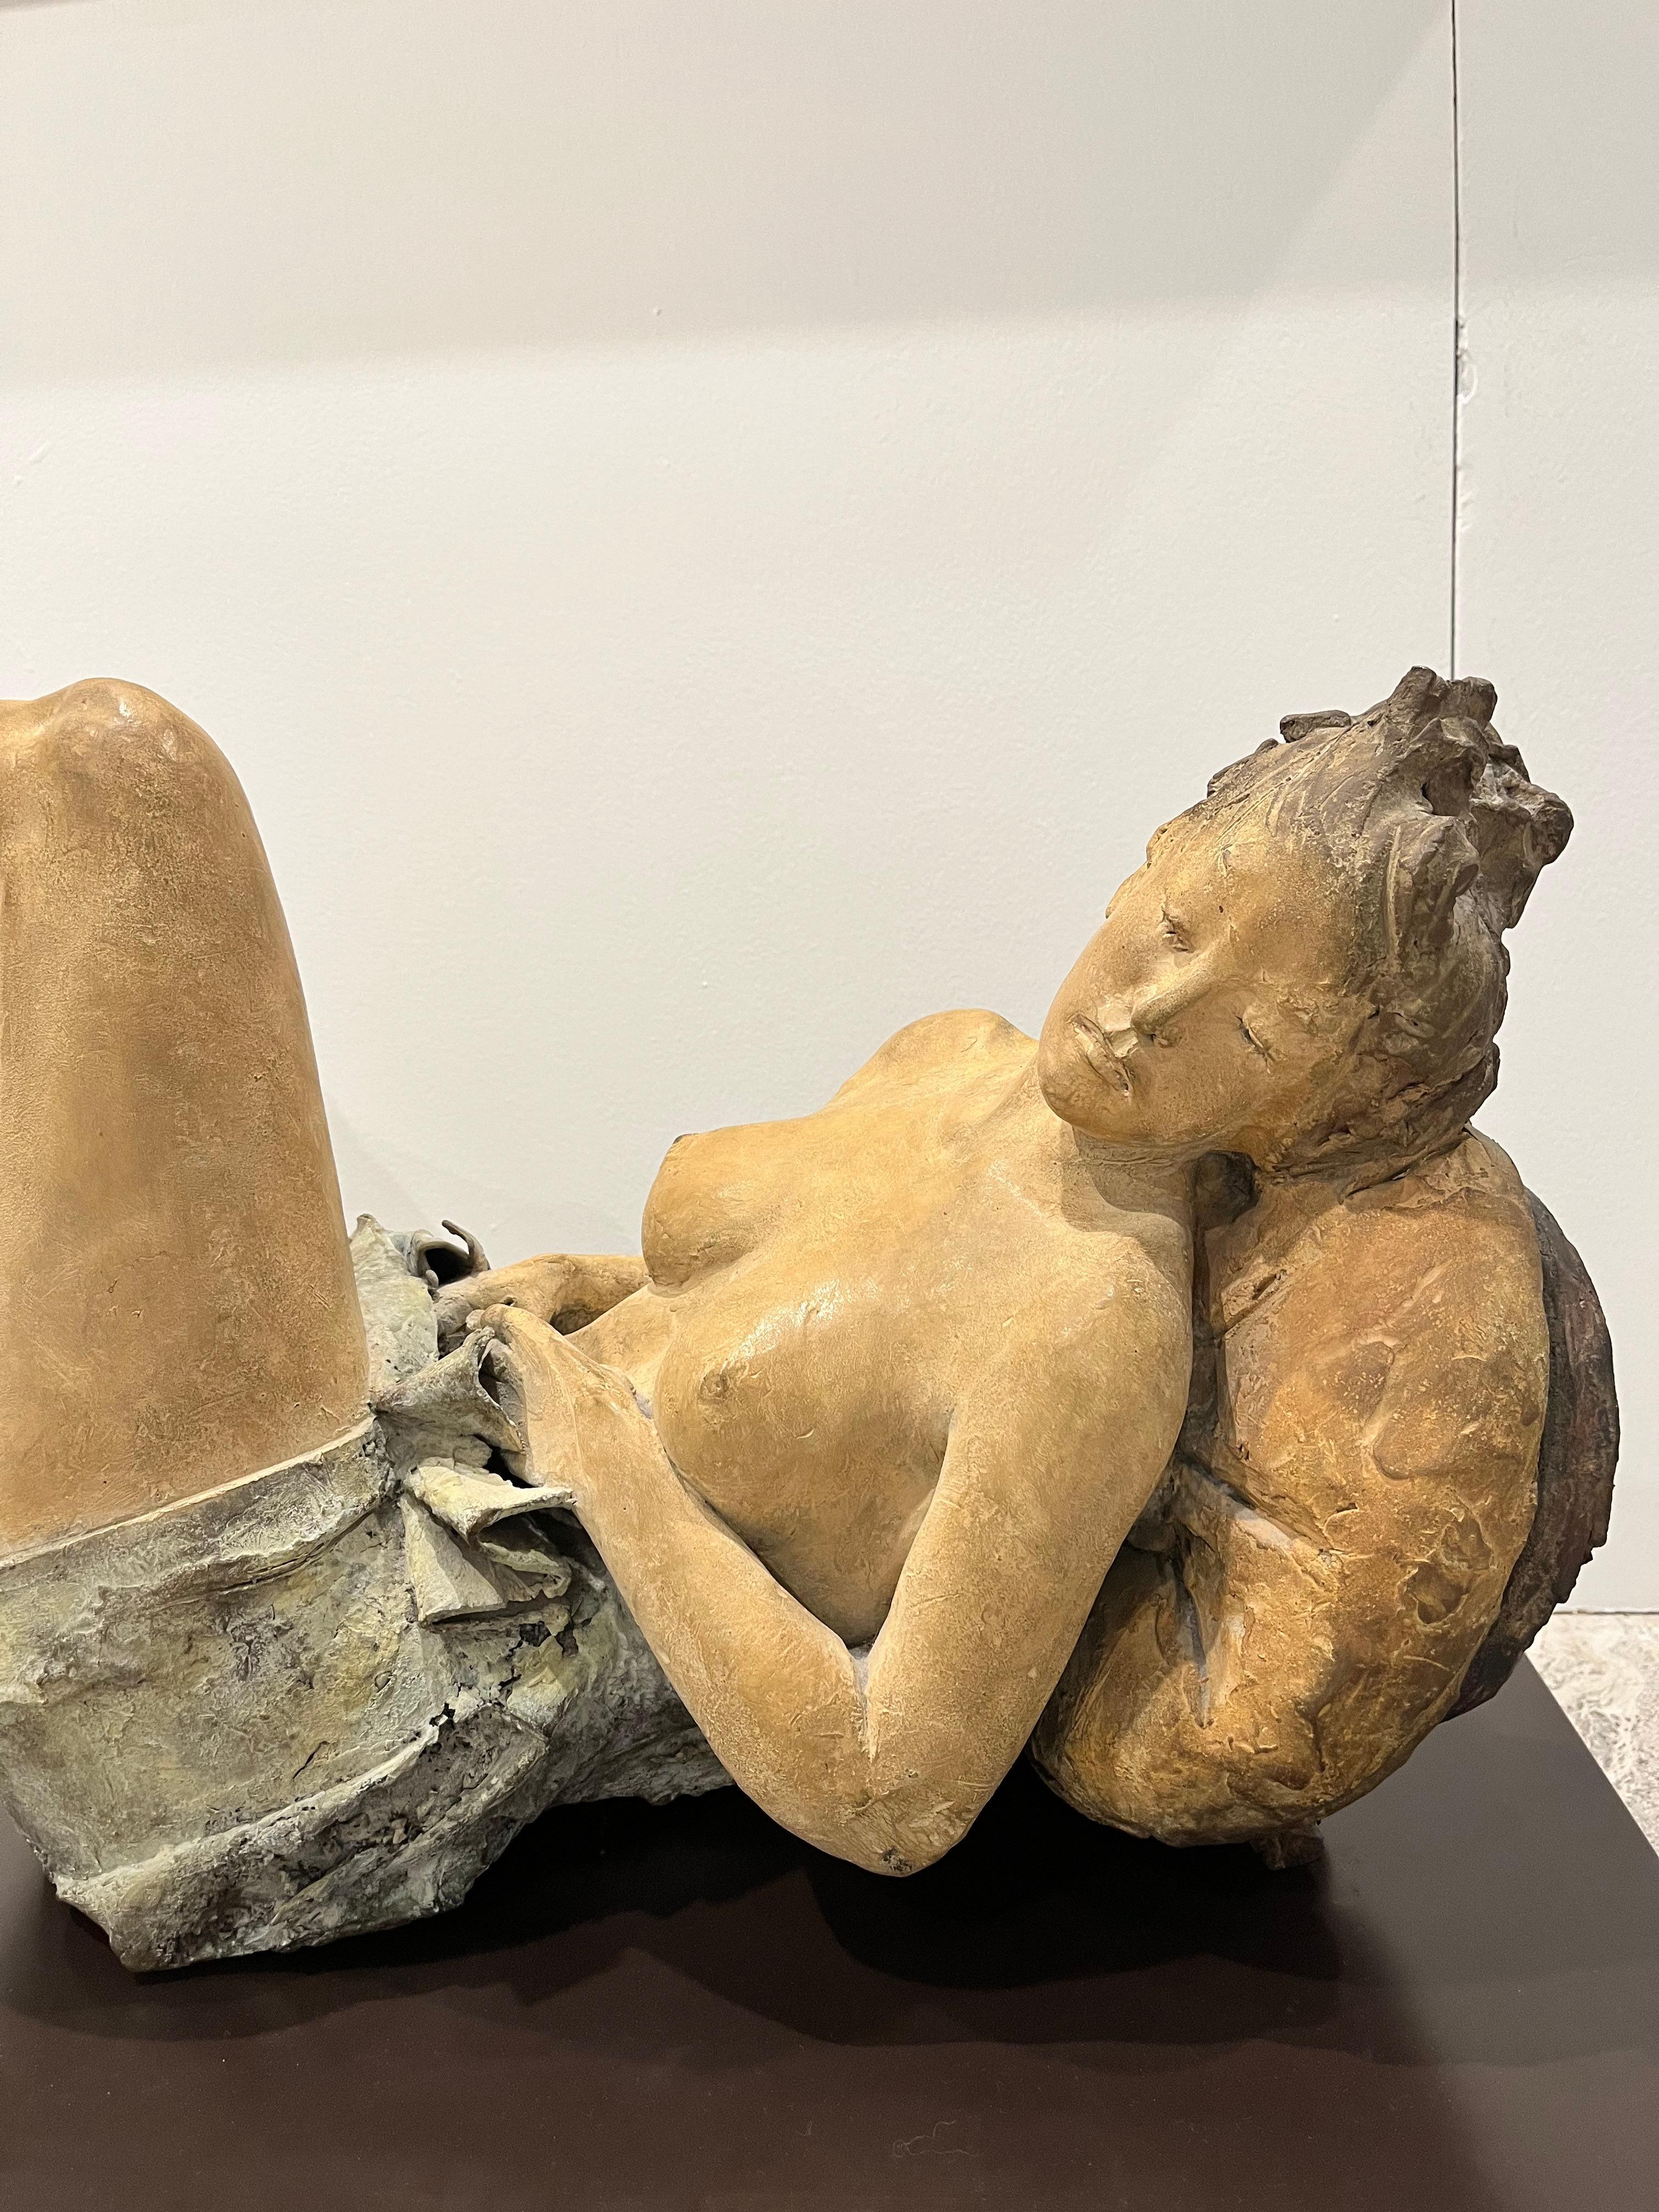 Feine Schönheit weiblicher Akt Skulptur in Bronze, Patina Ocker und Azur, Staub blau (Realismus), Sculpture, von Ugo Riva